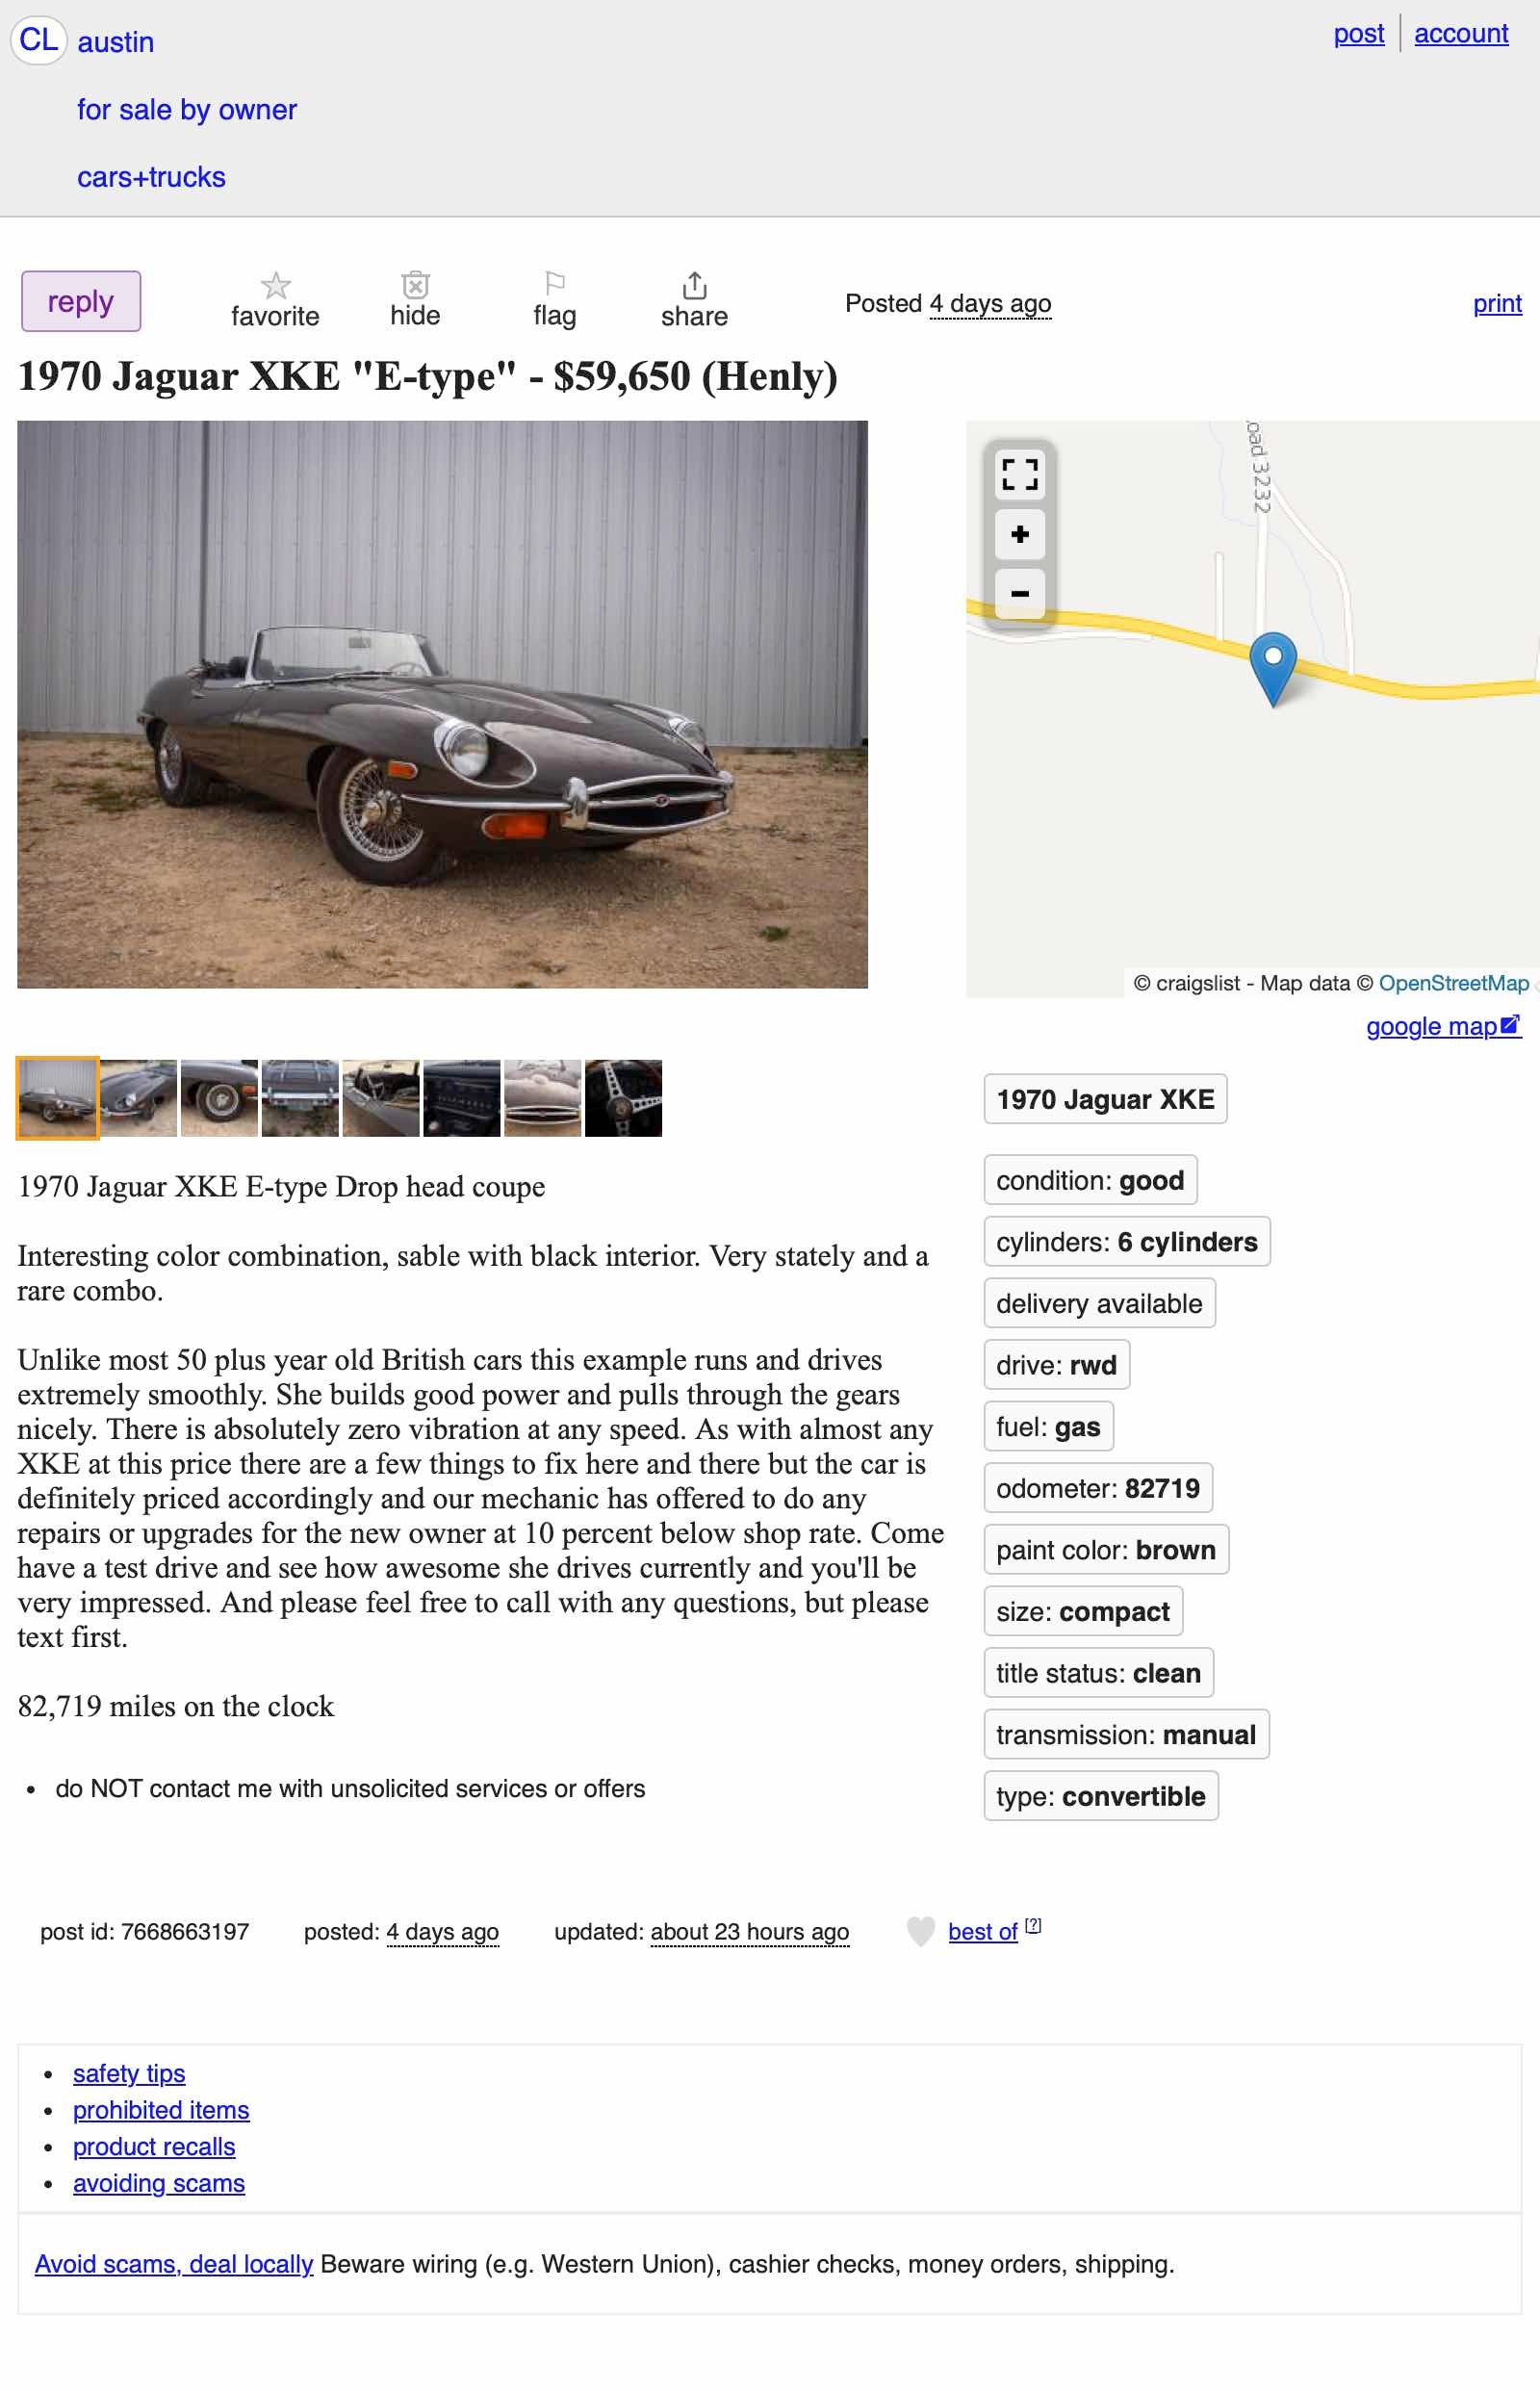 at $59,650, is this 1970 jaguar xke a beautiful bargain?